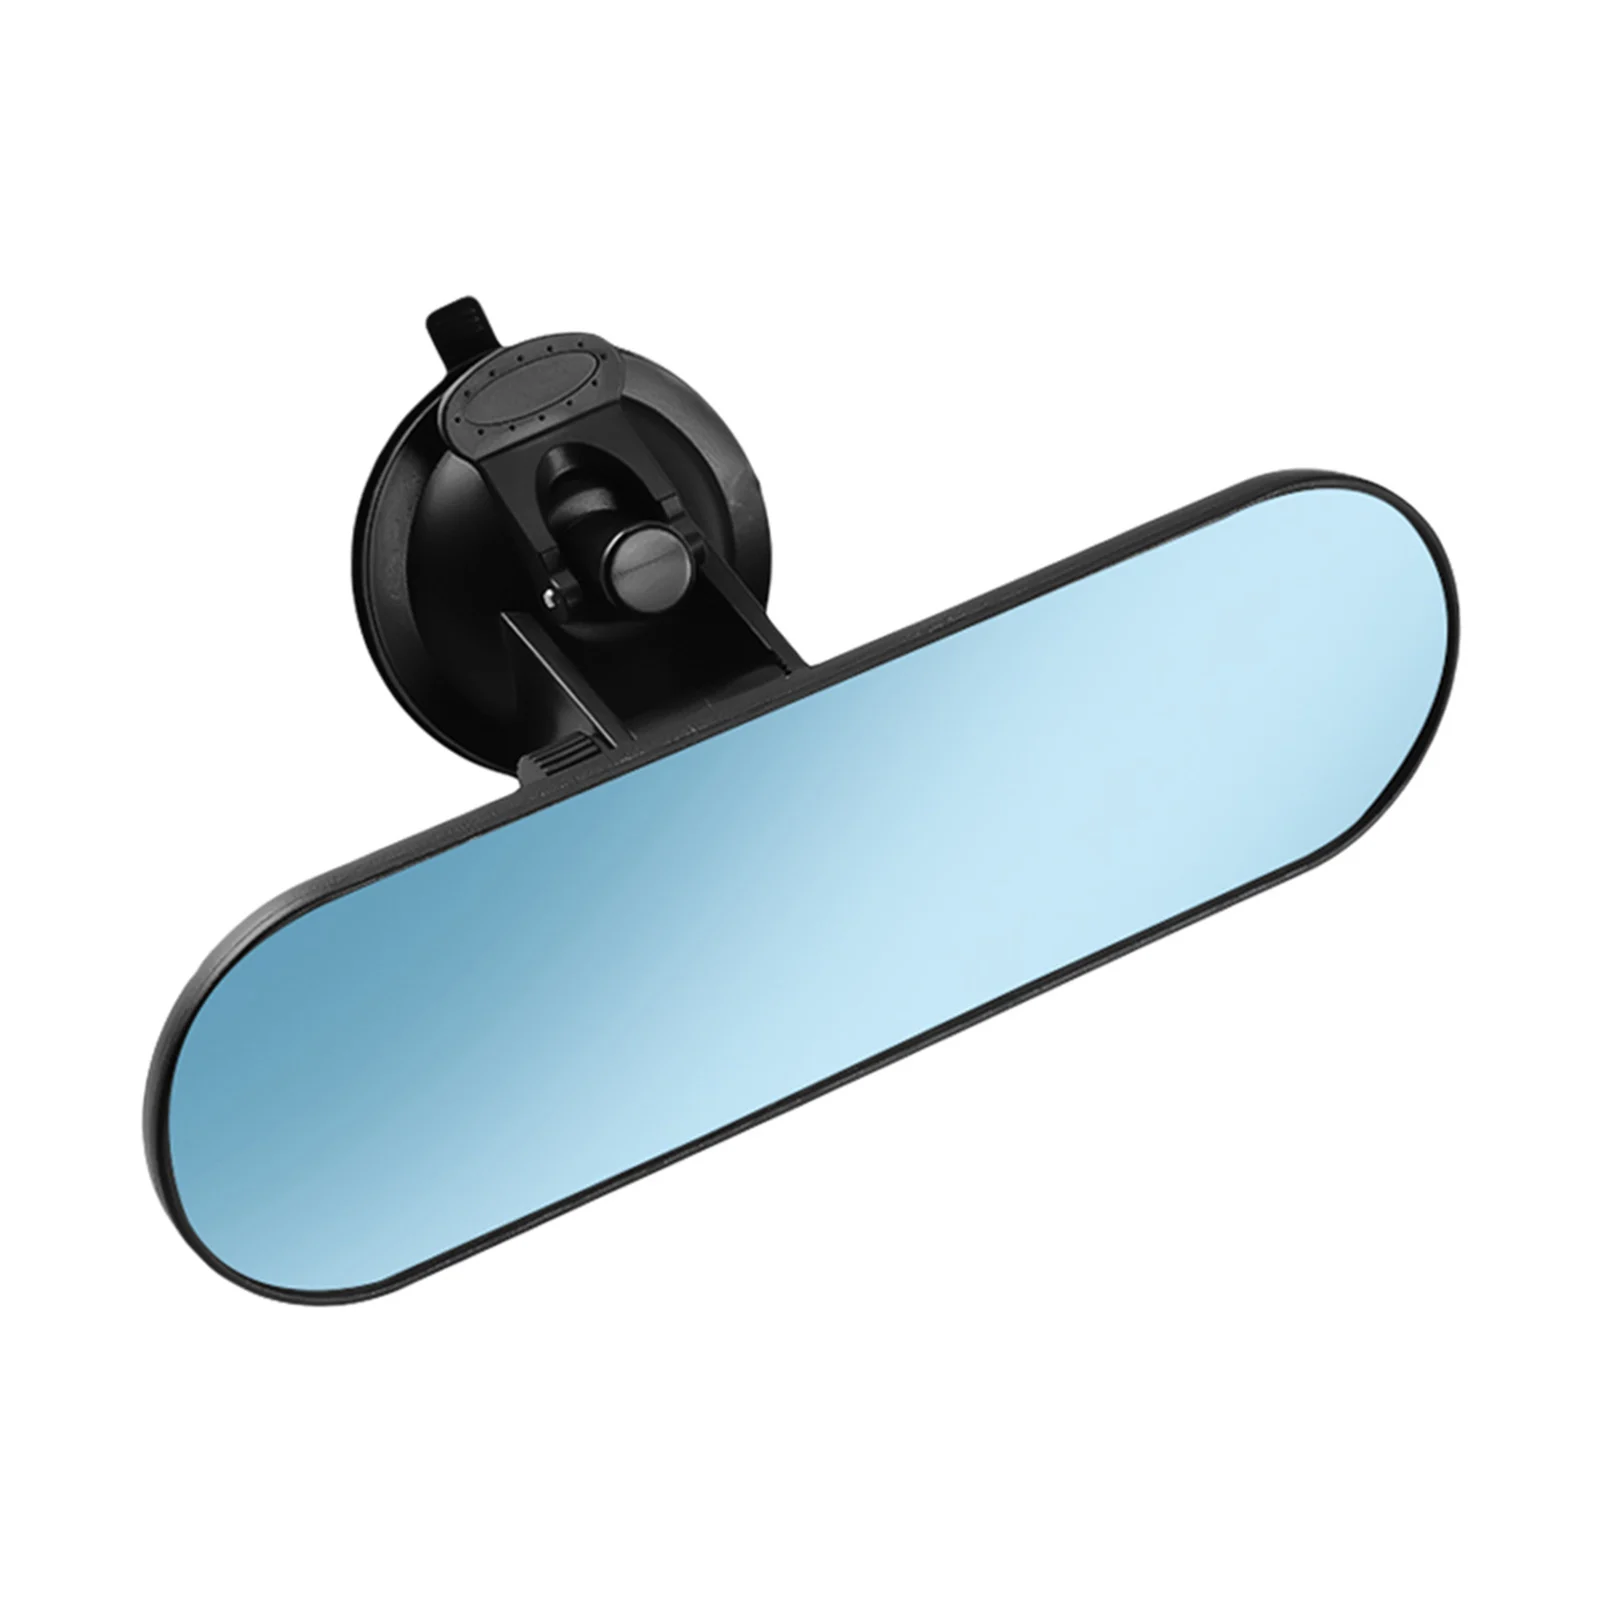 Universal Car Espelho Retrovisor com Ventosa, 360 ° ajustável Interior Espelho Retrovisor, 220*65mm, Caminhão Espelho, Universal